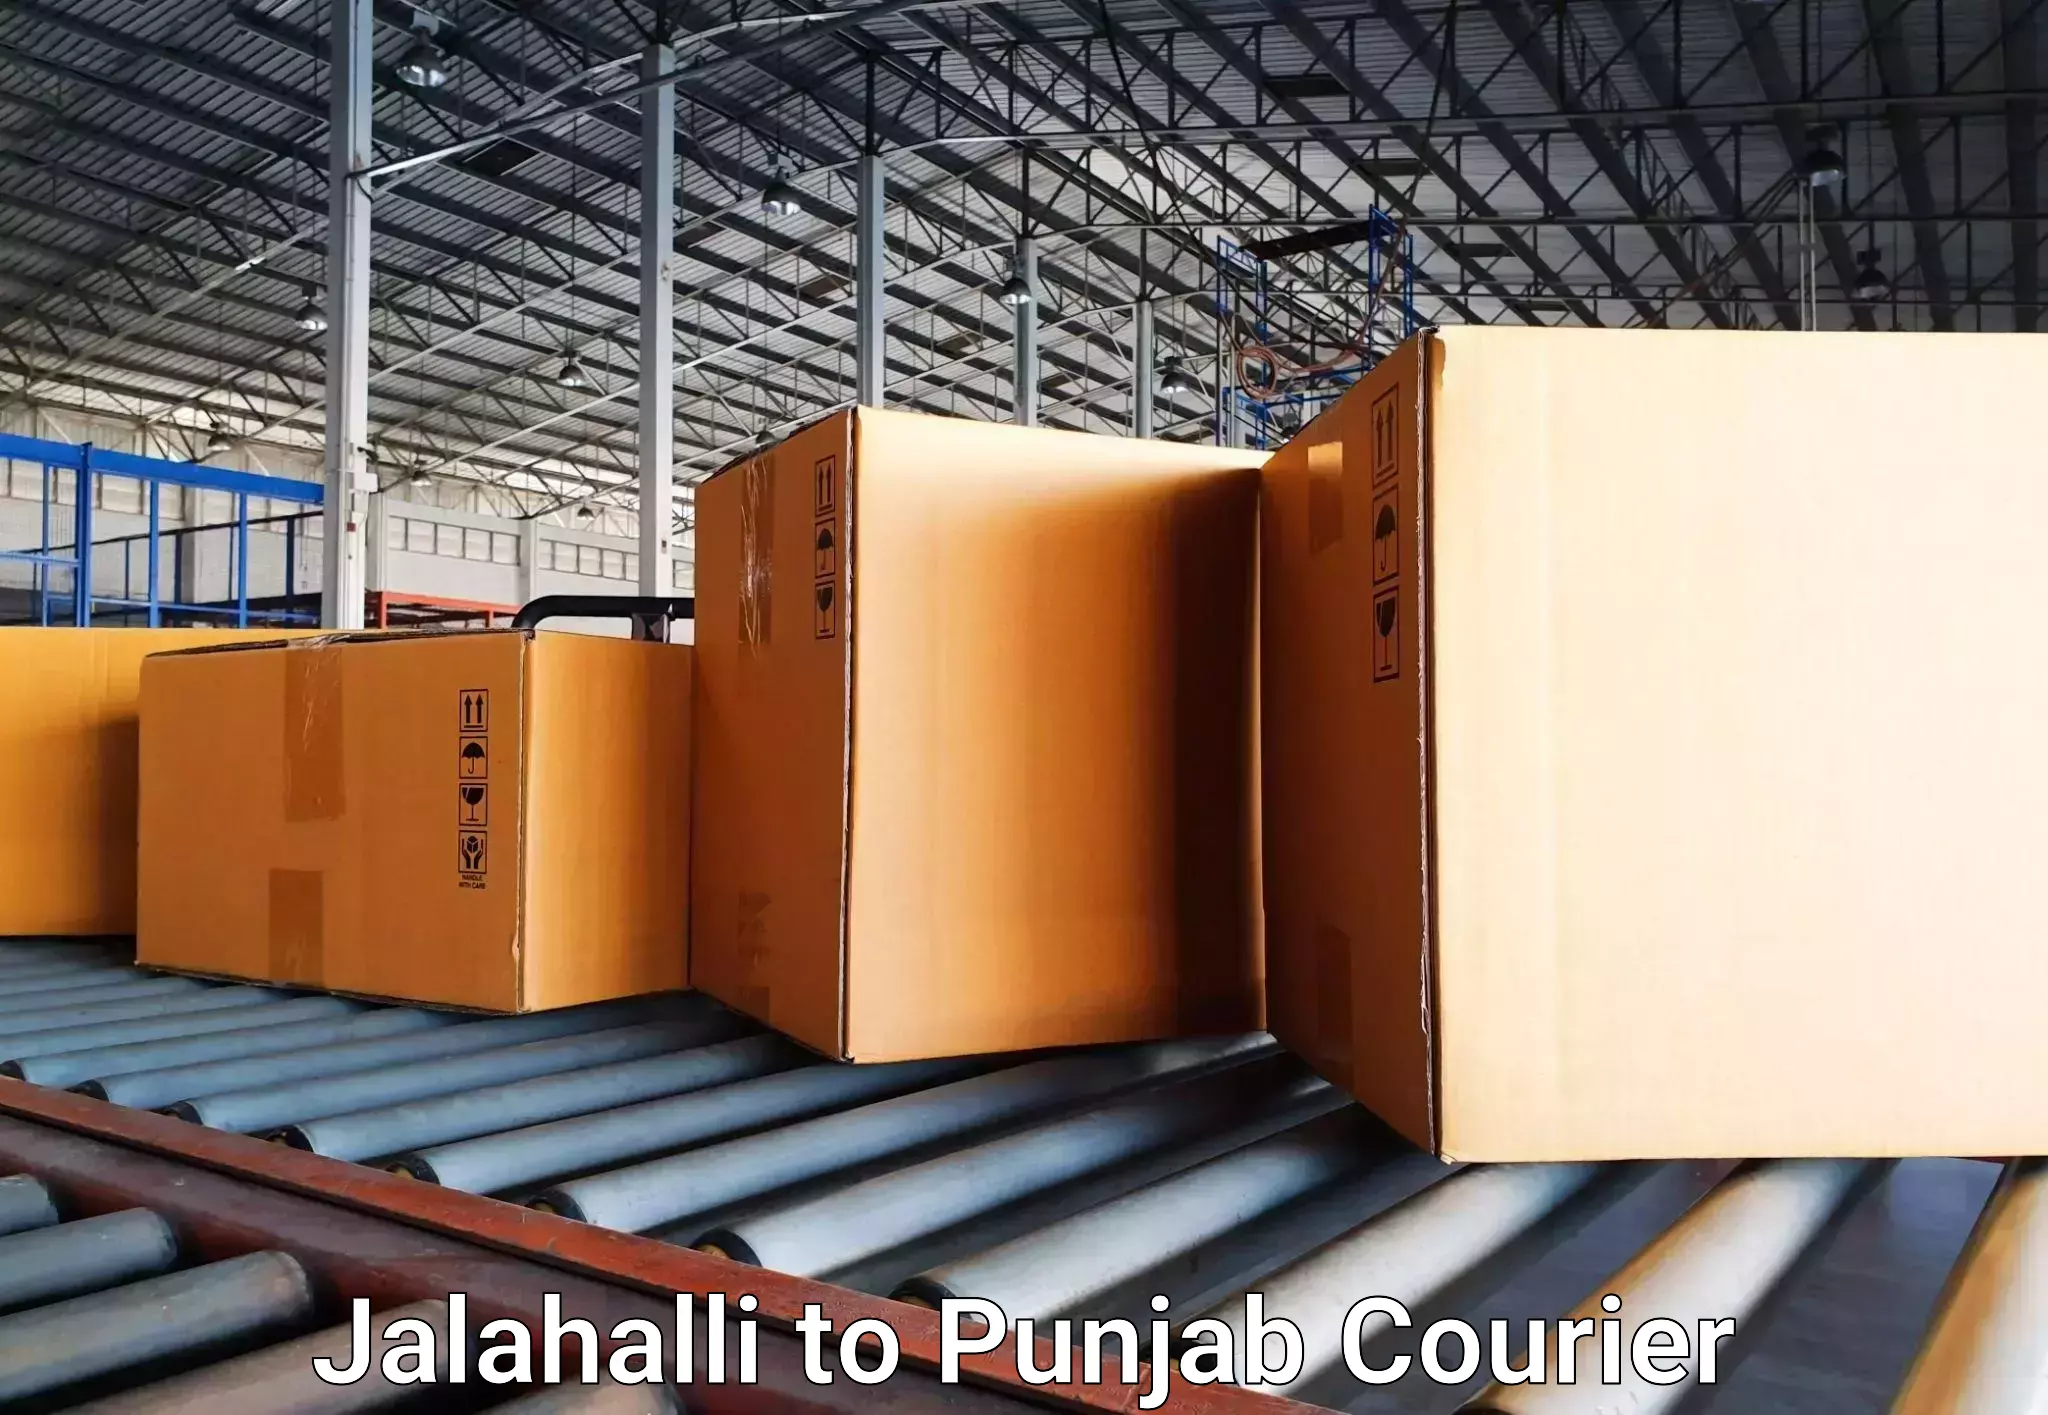 Luggage transport consultancy Jalahalli to Machhiwara